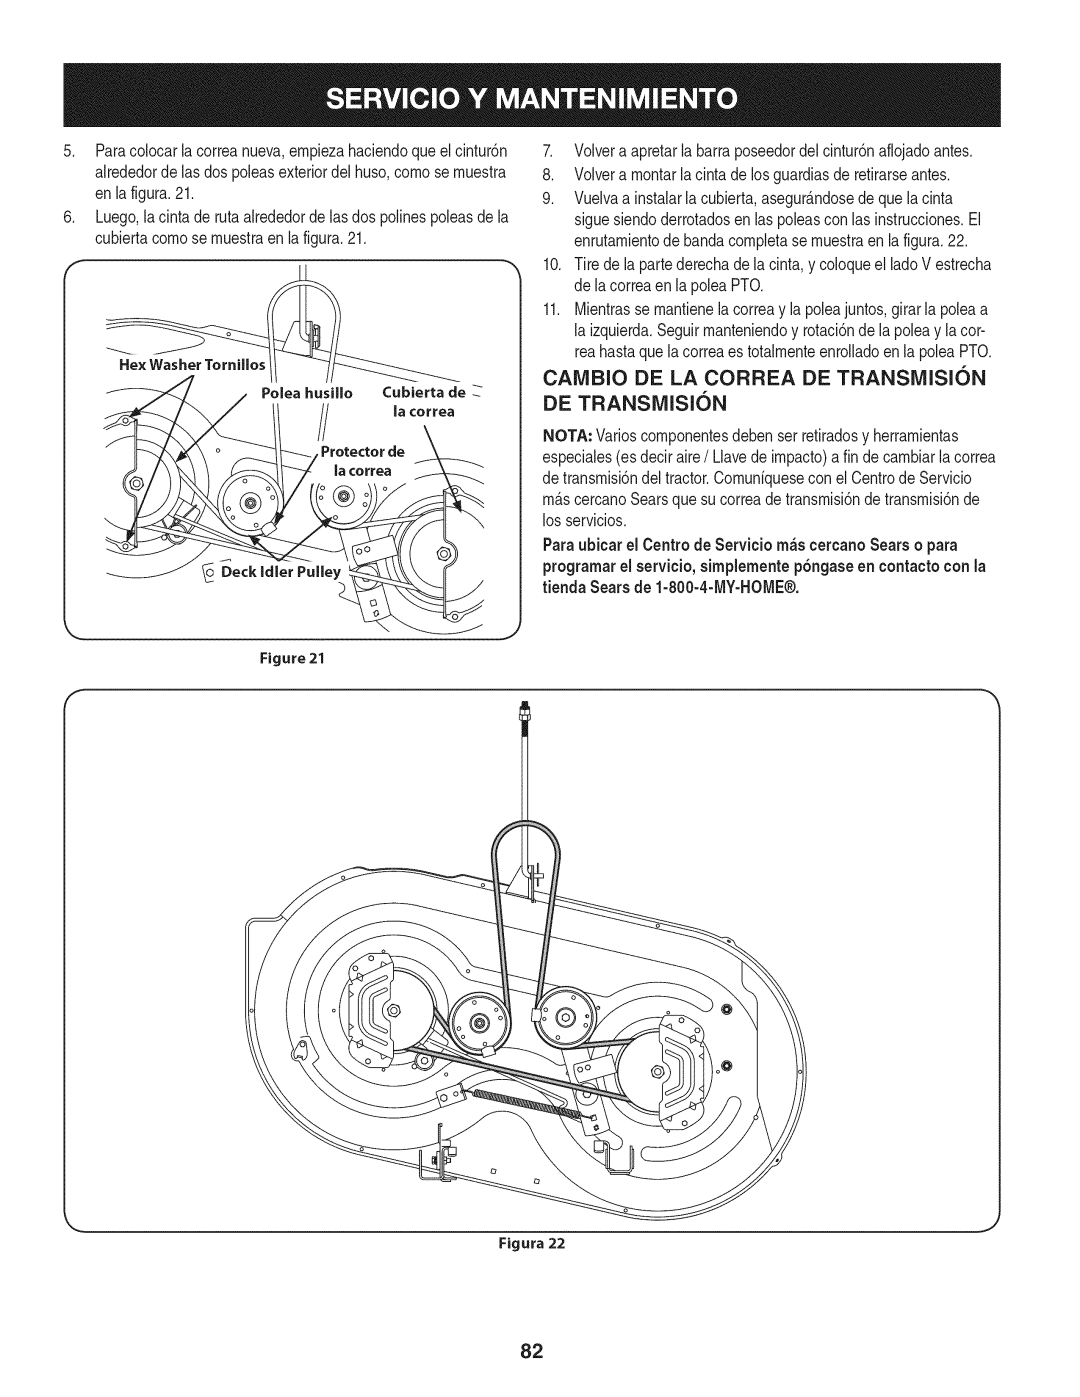 Craftsman 247.28901 manual CAIVIBIO DE LA CORREA DE TRANSiVIISI6N, Polea husillo Cubierta de la correa Protector de 